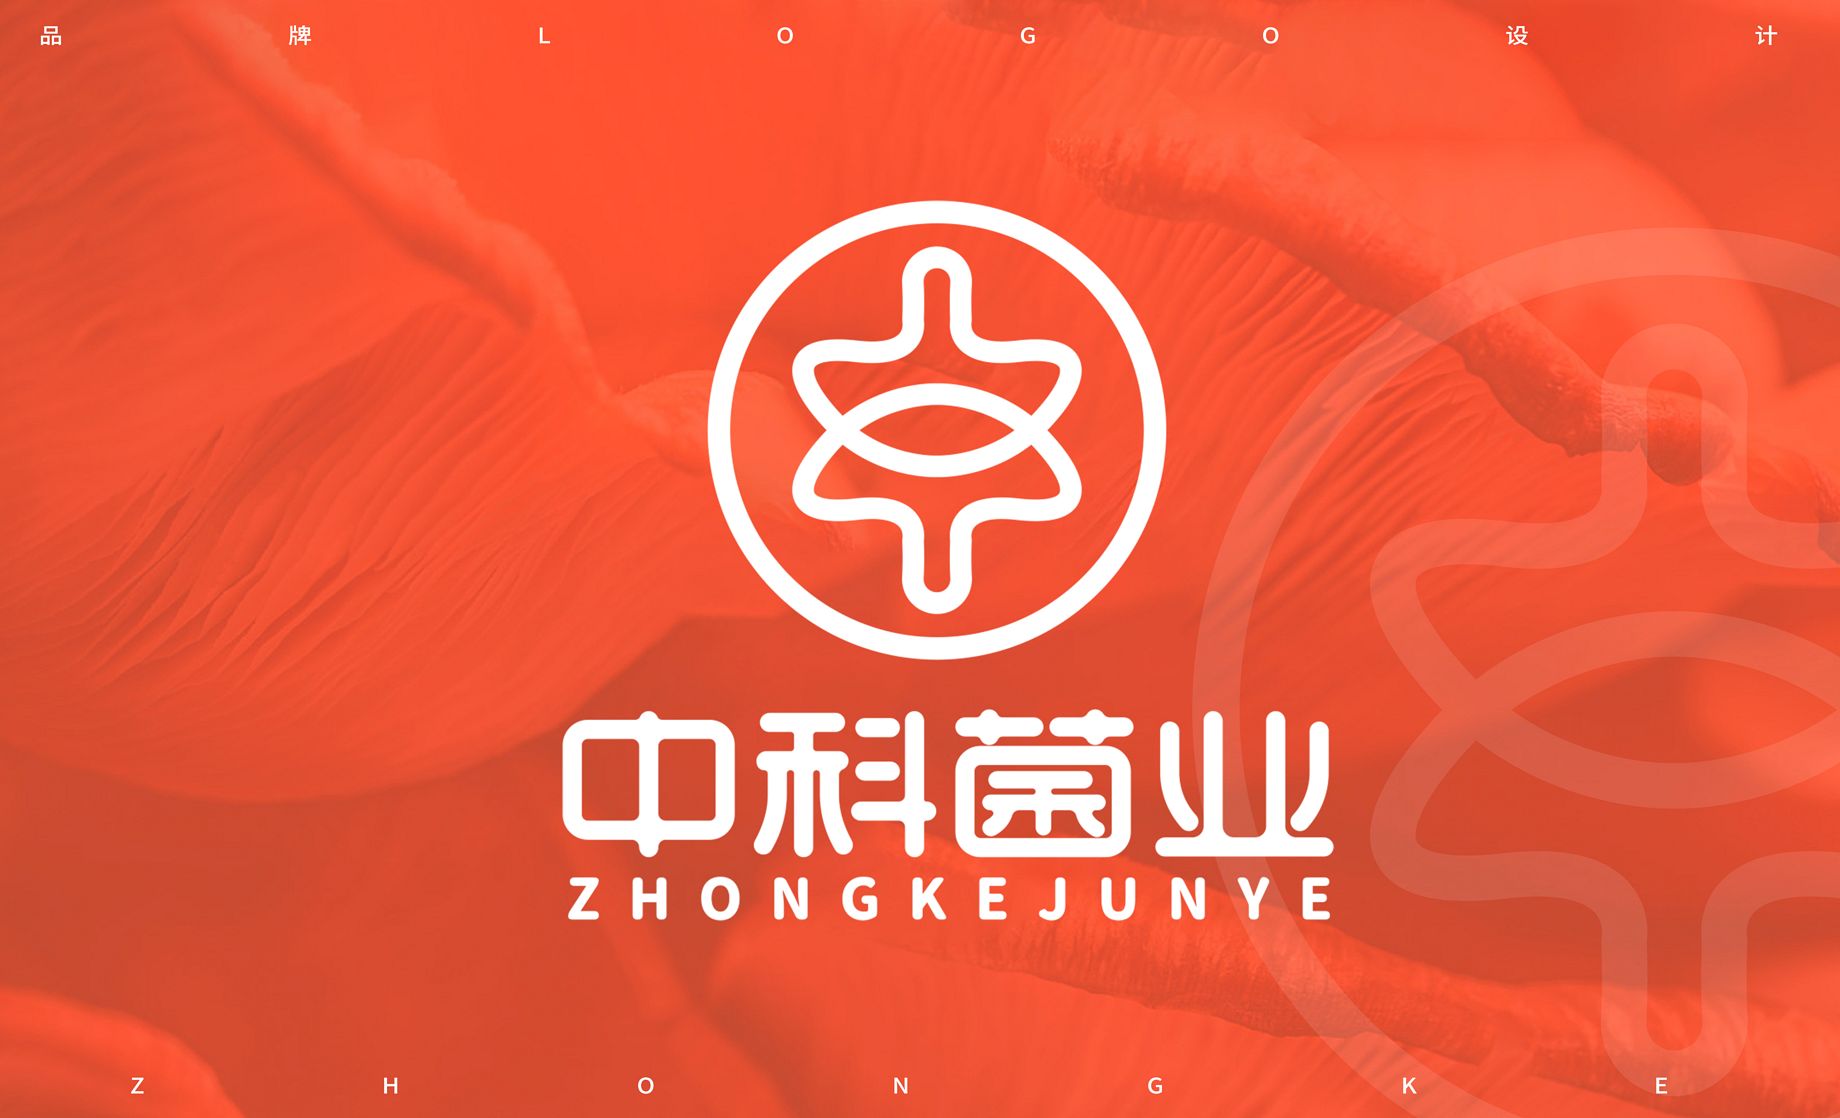 AI-中科菌业品牌logo标识设计